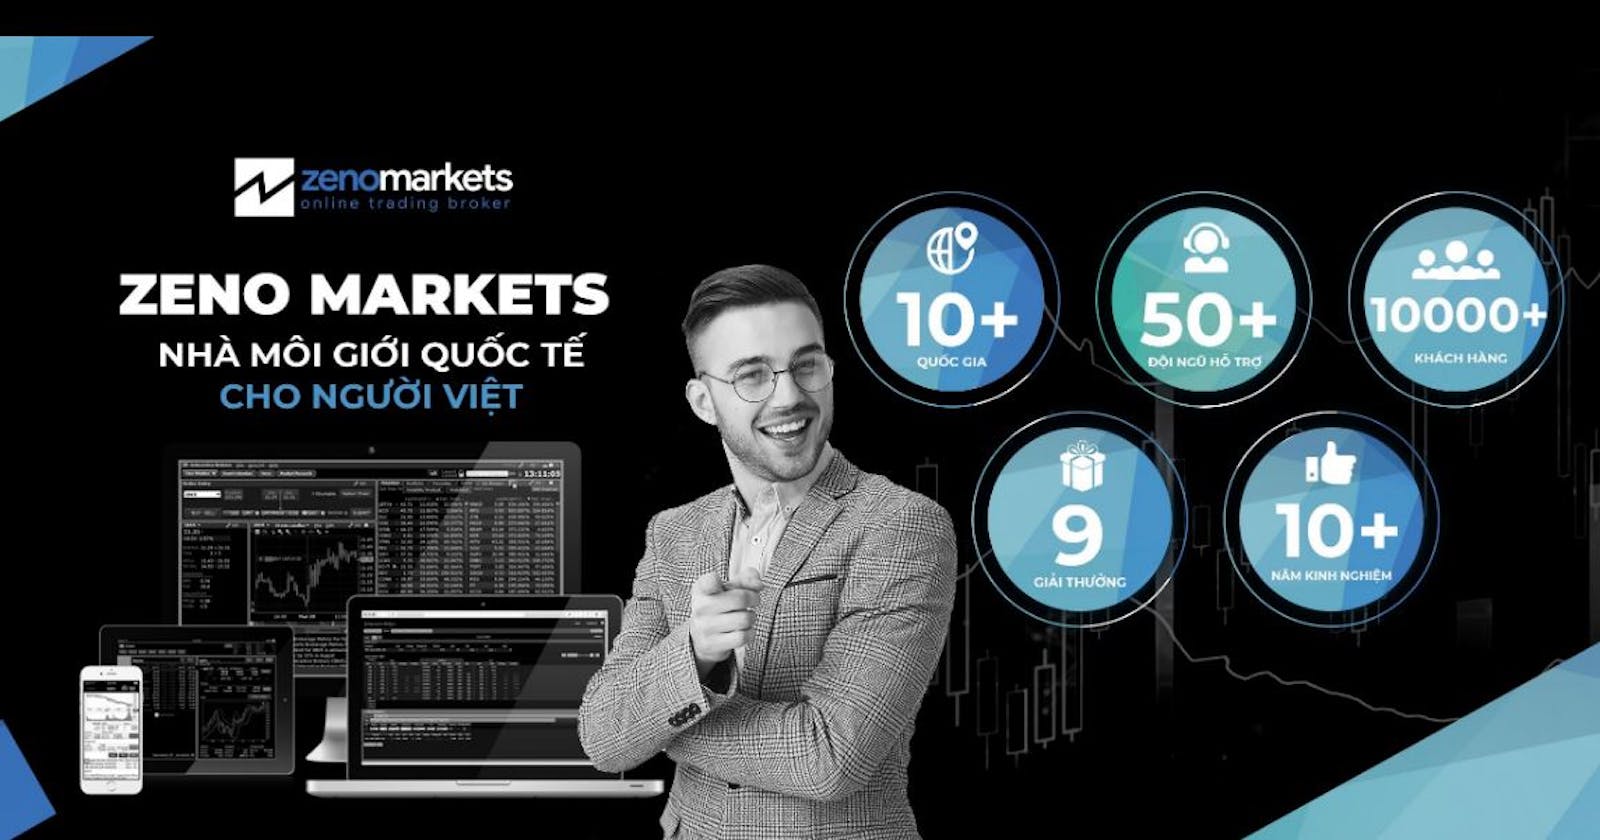 Đánh giá Zeno Markets nhà môi giới quốc tế cho người Việt